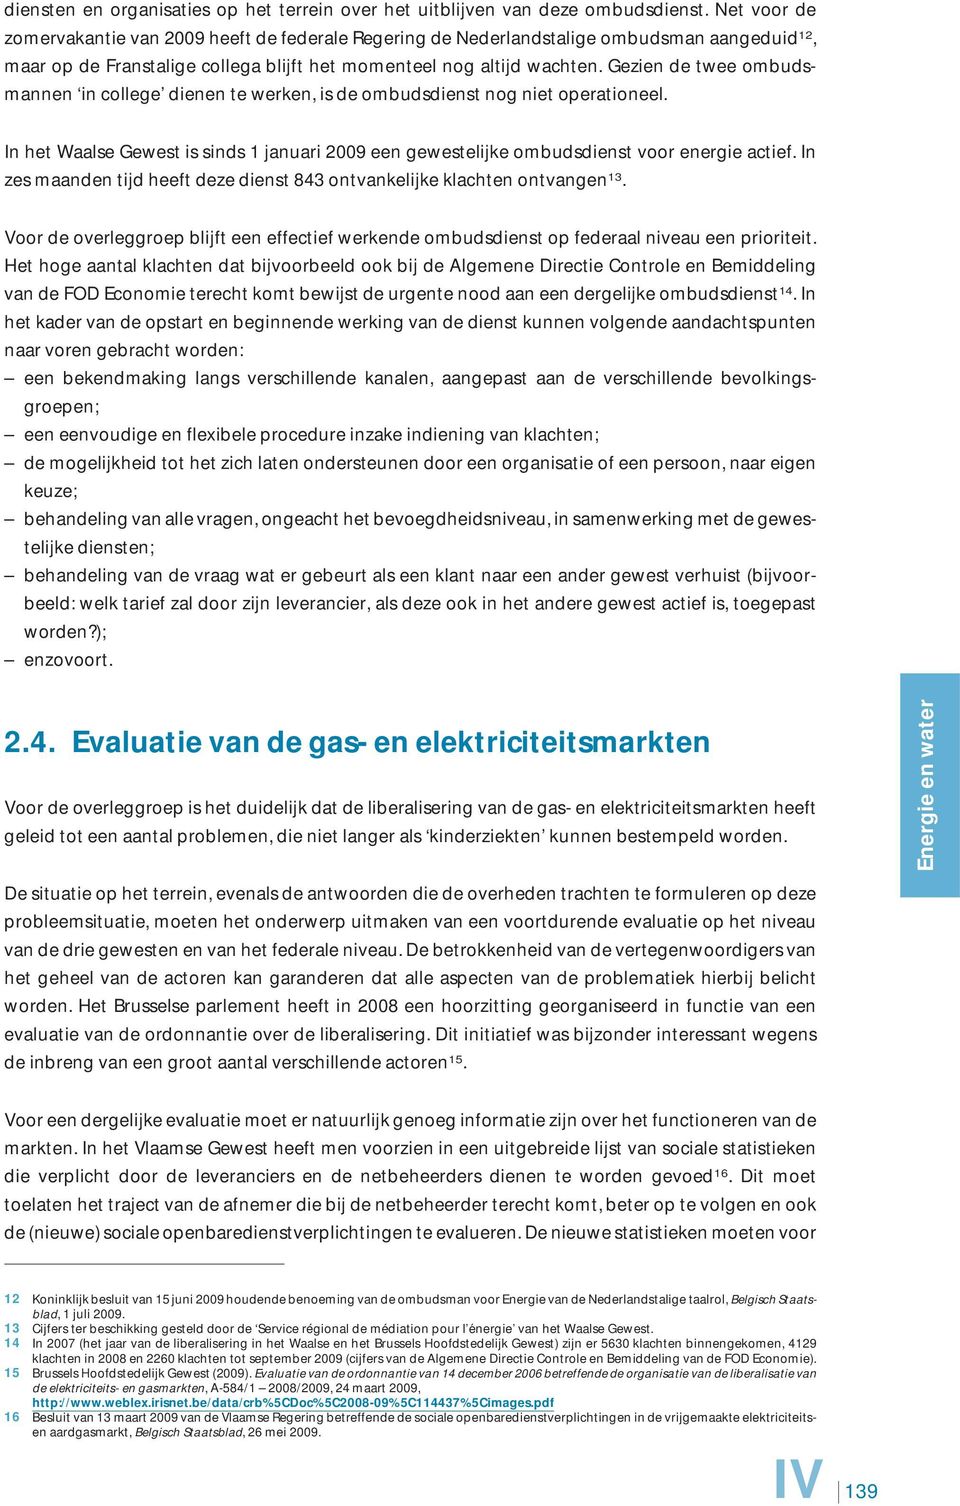 Gezien de twee ombudsmannen in college dienen te werken, is de ombudsdienst nog niet operationeel. In het Waalse Gewest is sinds 1 januari 2009 een gewestelijke ombudsdienst voor energie actief.